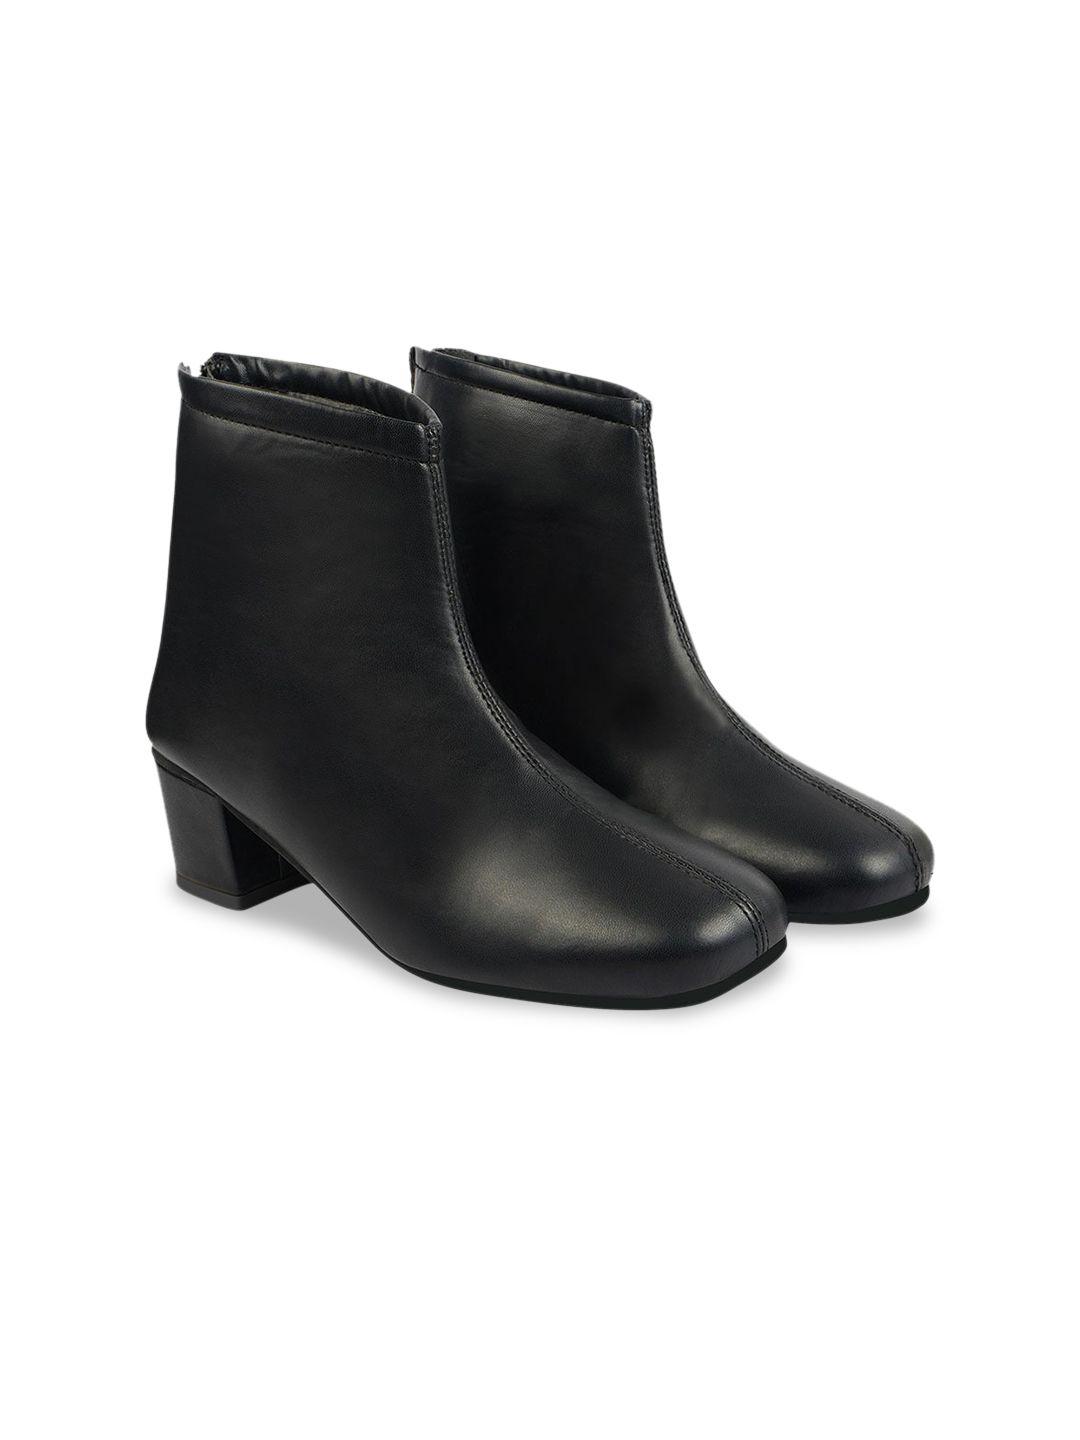 shoetopia women black regular boots